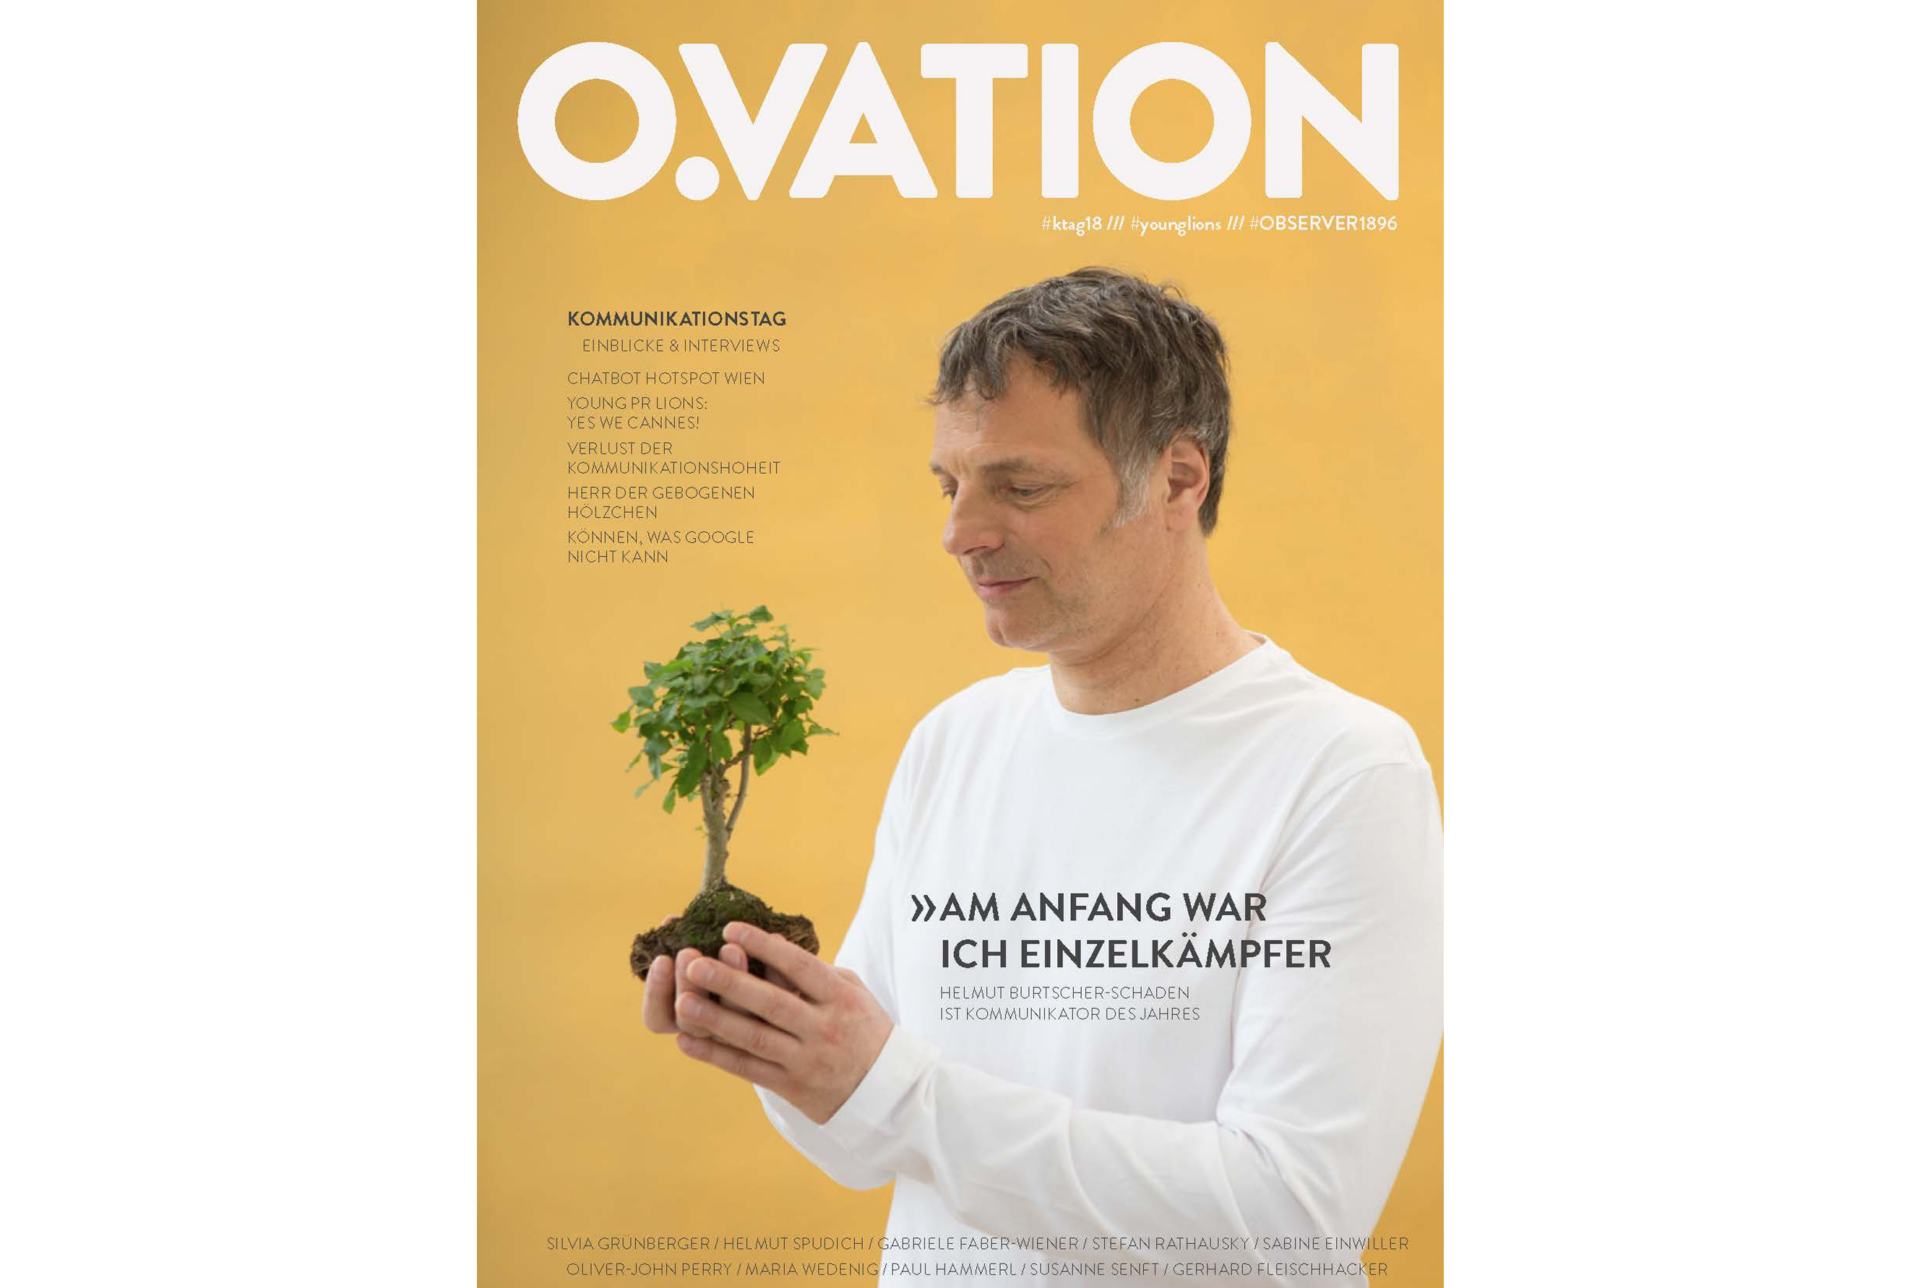 Helmut Burtscher-Schaden auf der Titelseite des O.VATION-Magazins